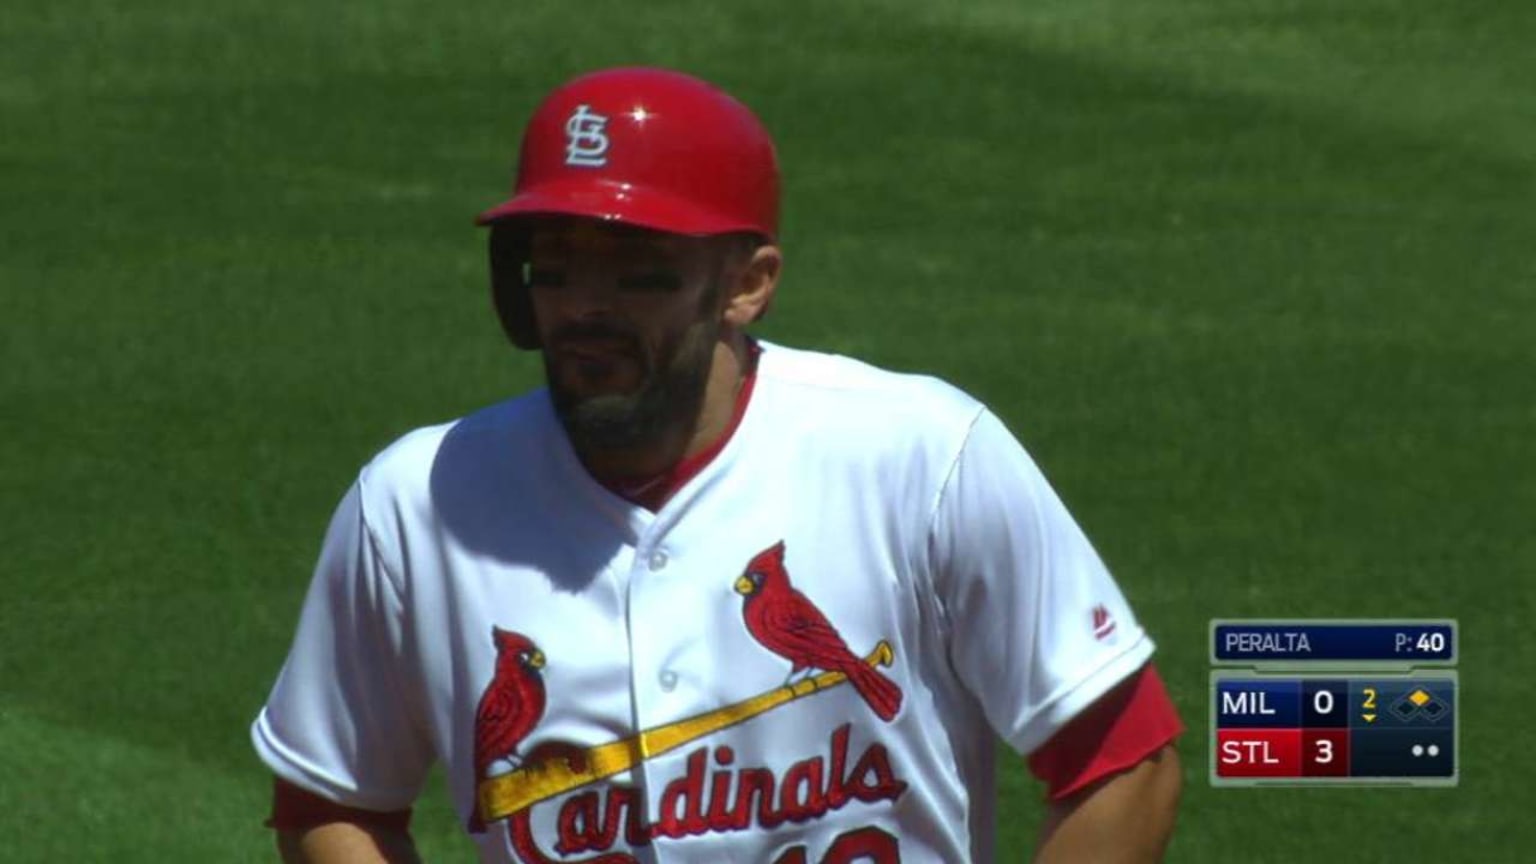 MLB St. Louis Cardinals (Matt Carpenter) Men's Replica Baseball Jersey.